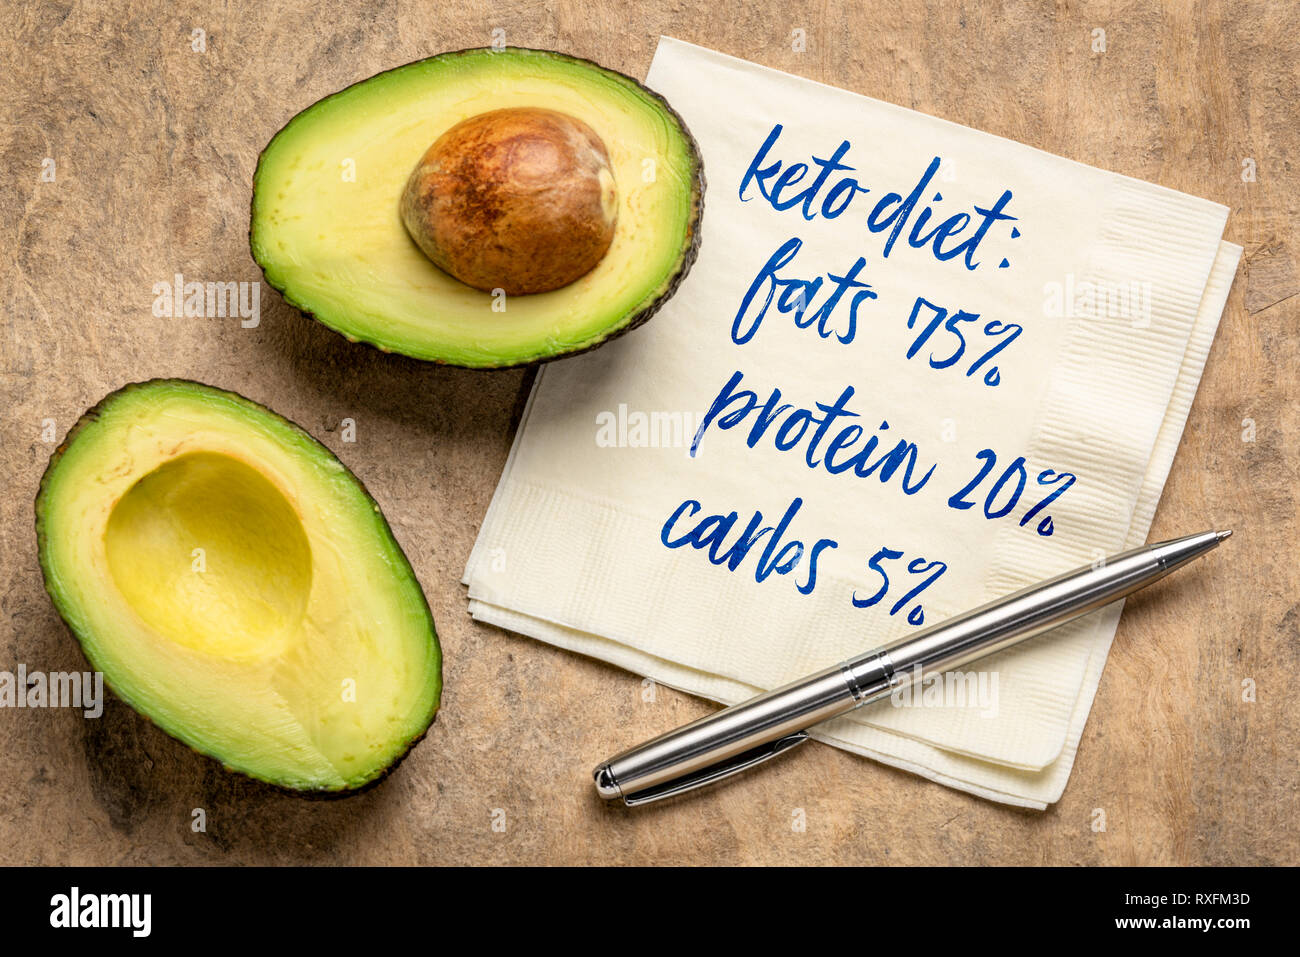 Dieta cheto concetto: 75% di grassi, 20% di proteine, 5% di carboidrati - scrittura sul tovagliolo con un taglio di avocado contro la carta di corteccia Foto Stock